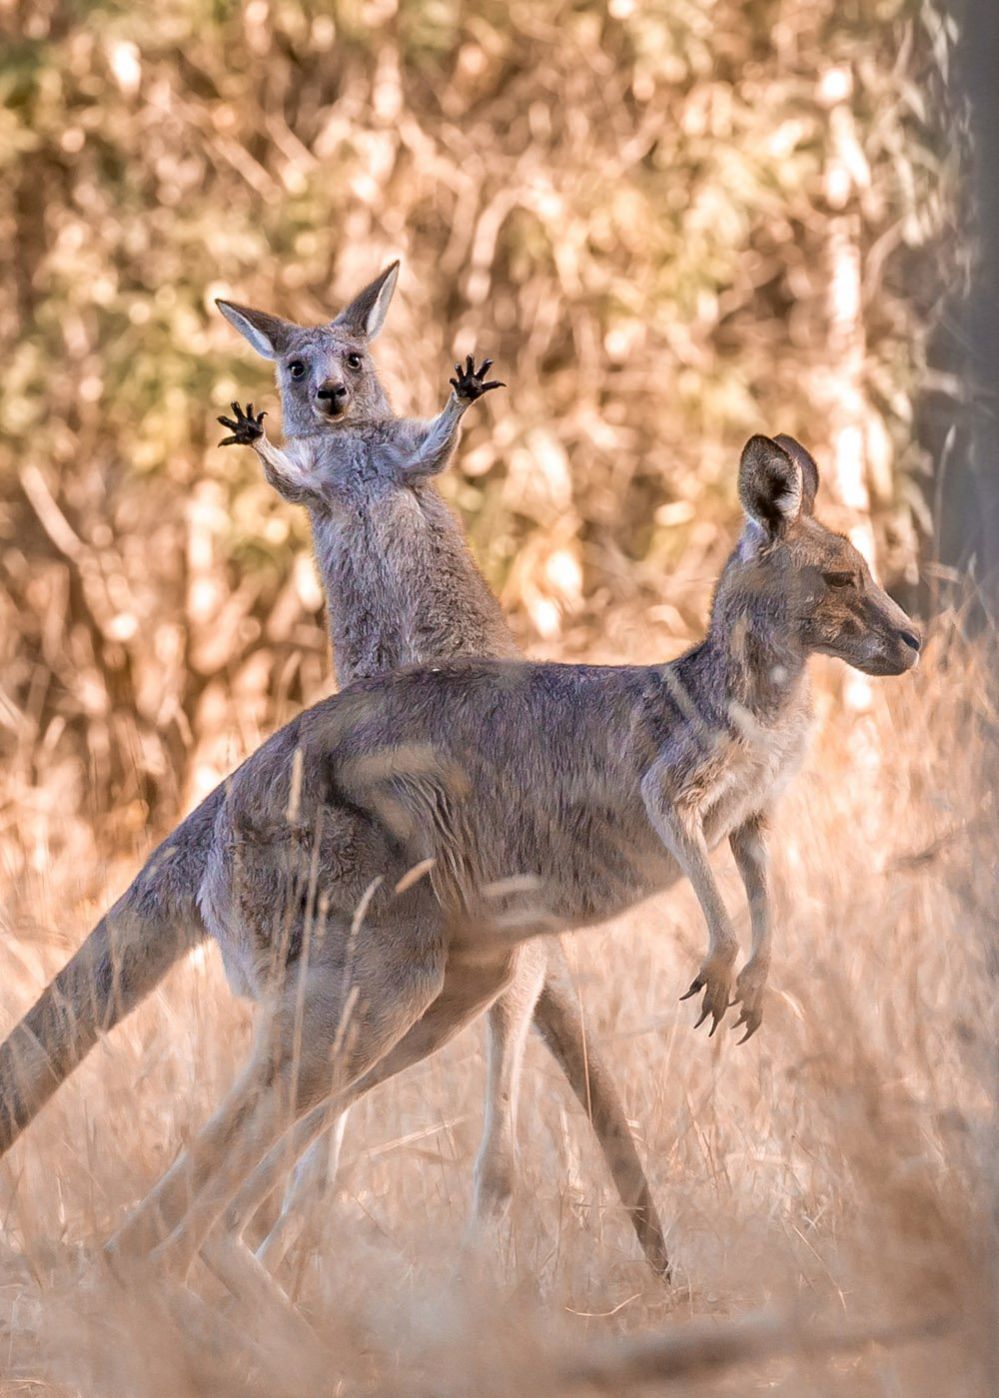 Grey kangaroos